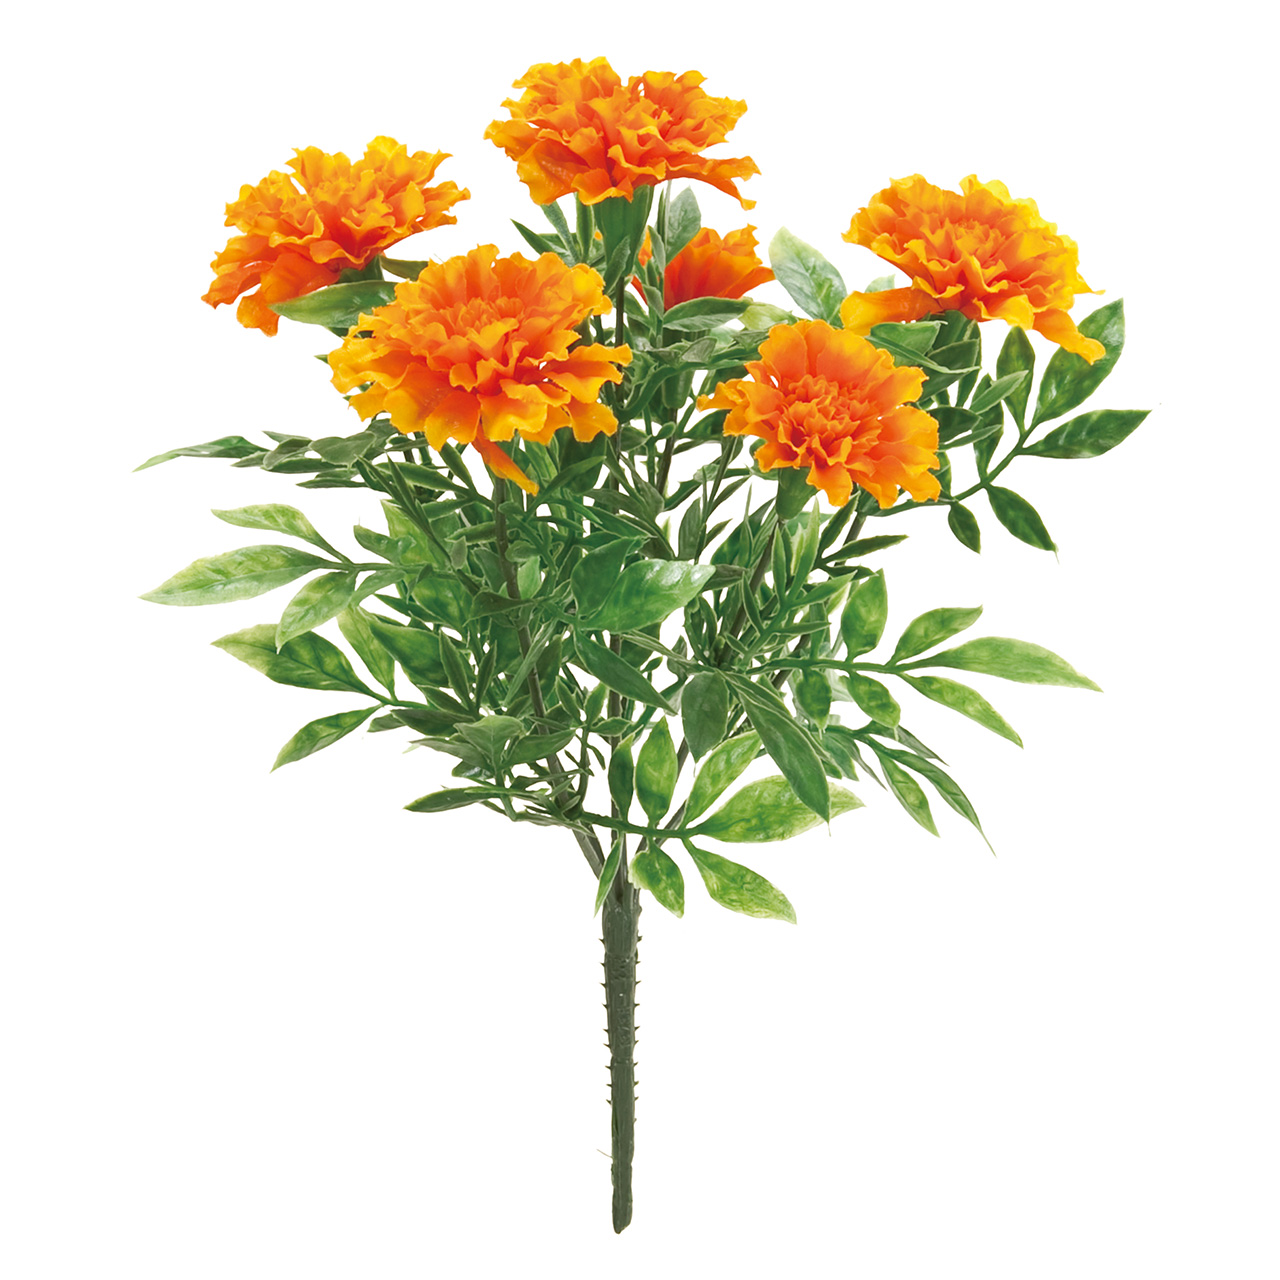 マイフラ 通販 Magiq マリーゴールド ブッシュ オレンジ アーティフィシャルフラワー 造花 Fm 009 マリーゴールド オレンジ Magiq アーティフィシャルフラワー 造花 全国にmagiq 花器 花資材などをお届けします